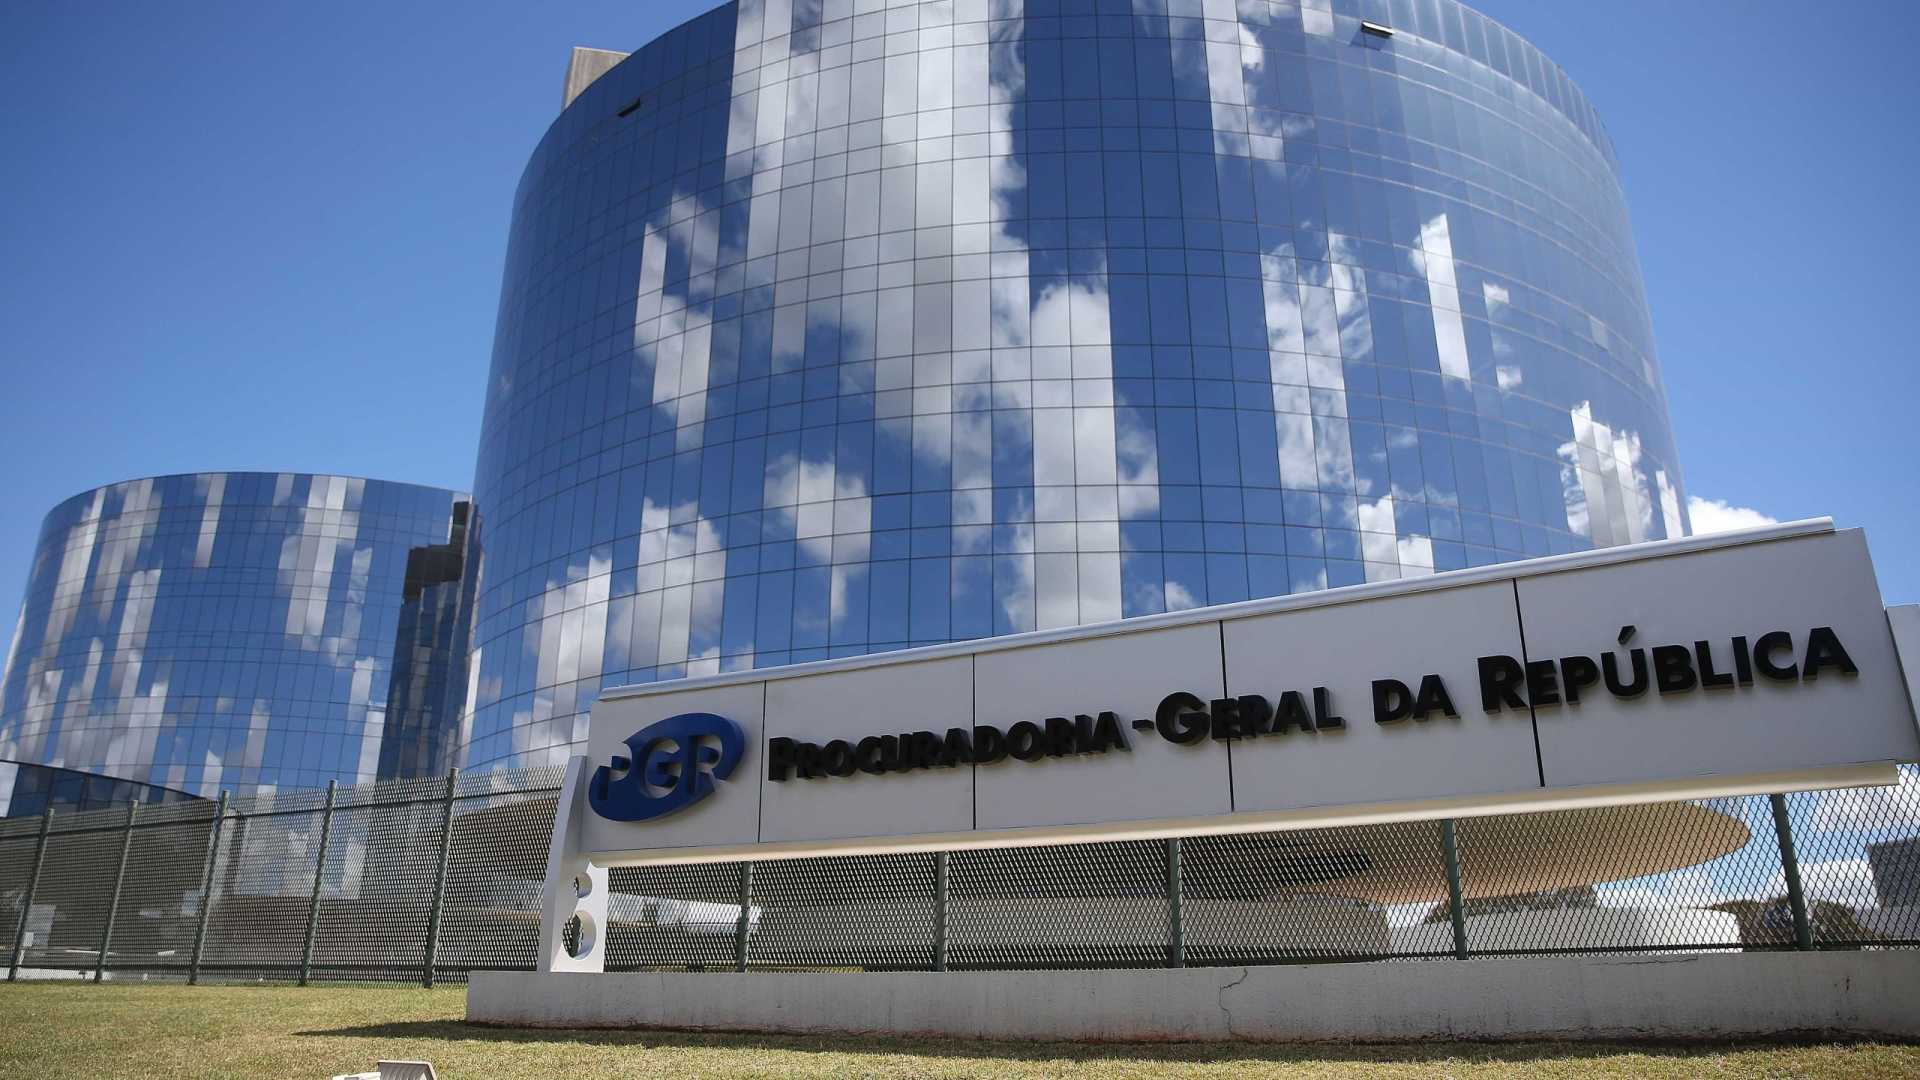 Cerca de R$ 650 milhões serão devolvidos à Petrobras, diz MPF